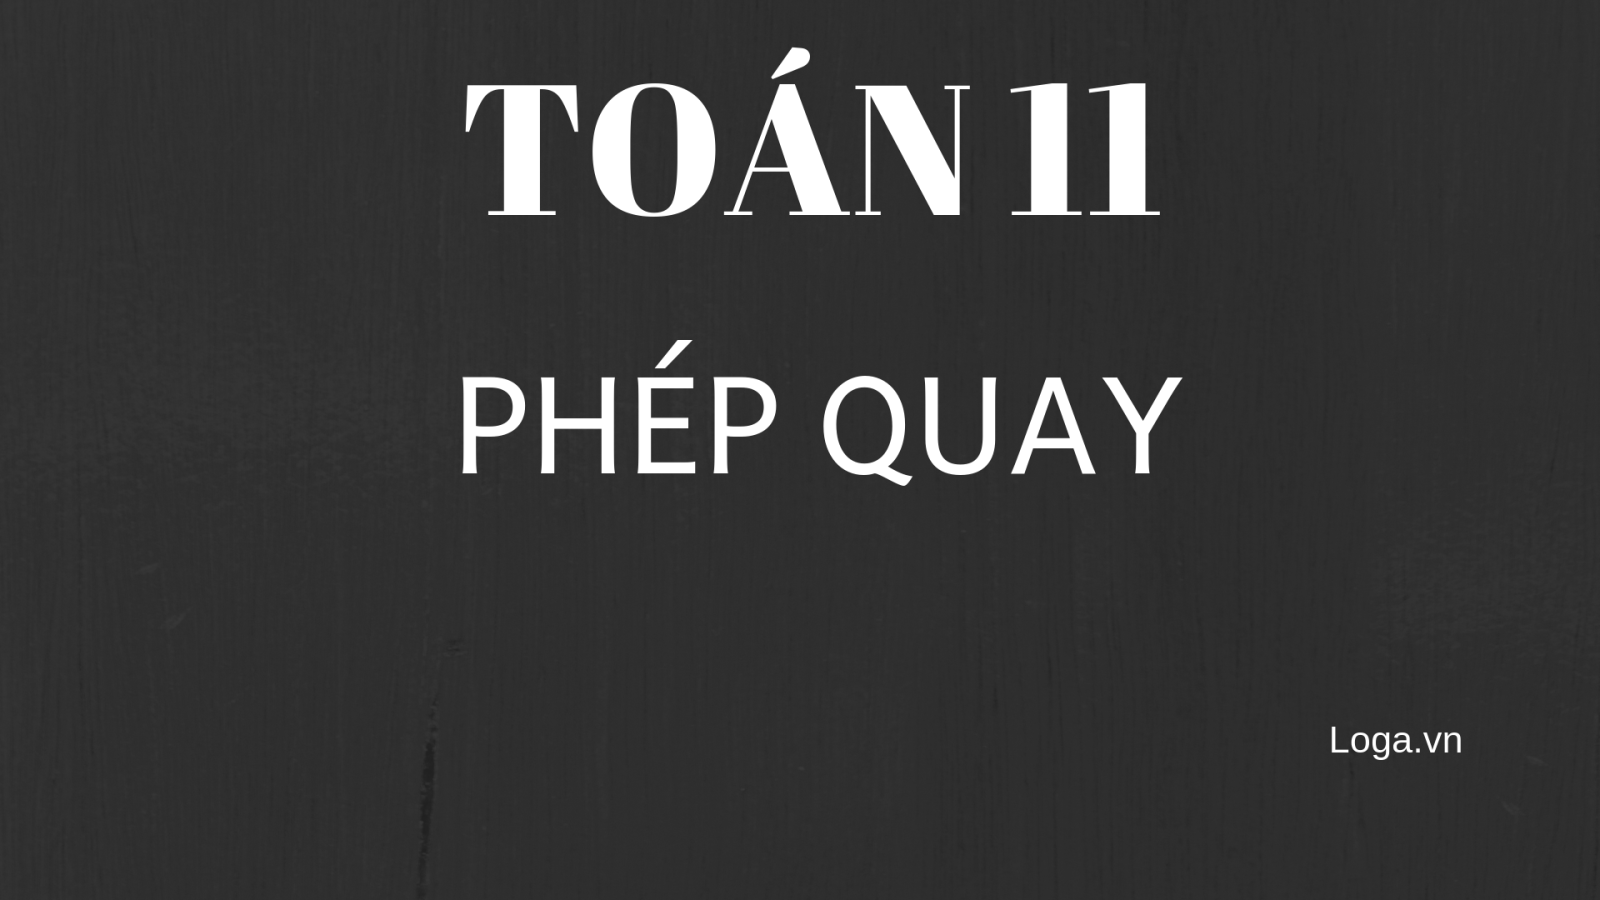 toan-11-phep-quay